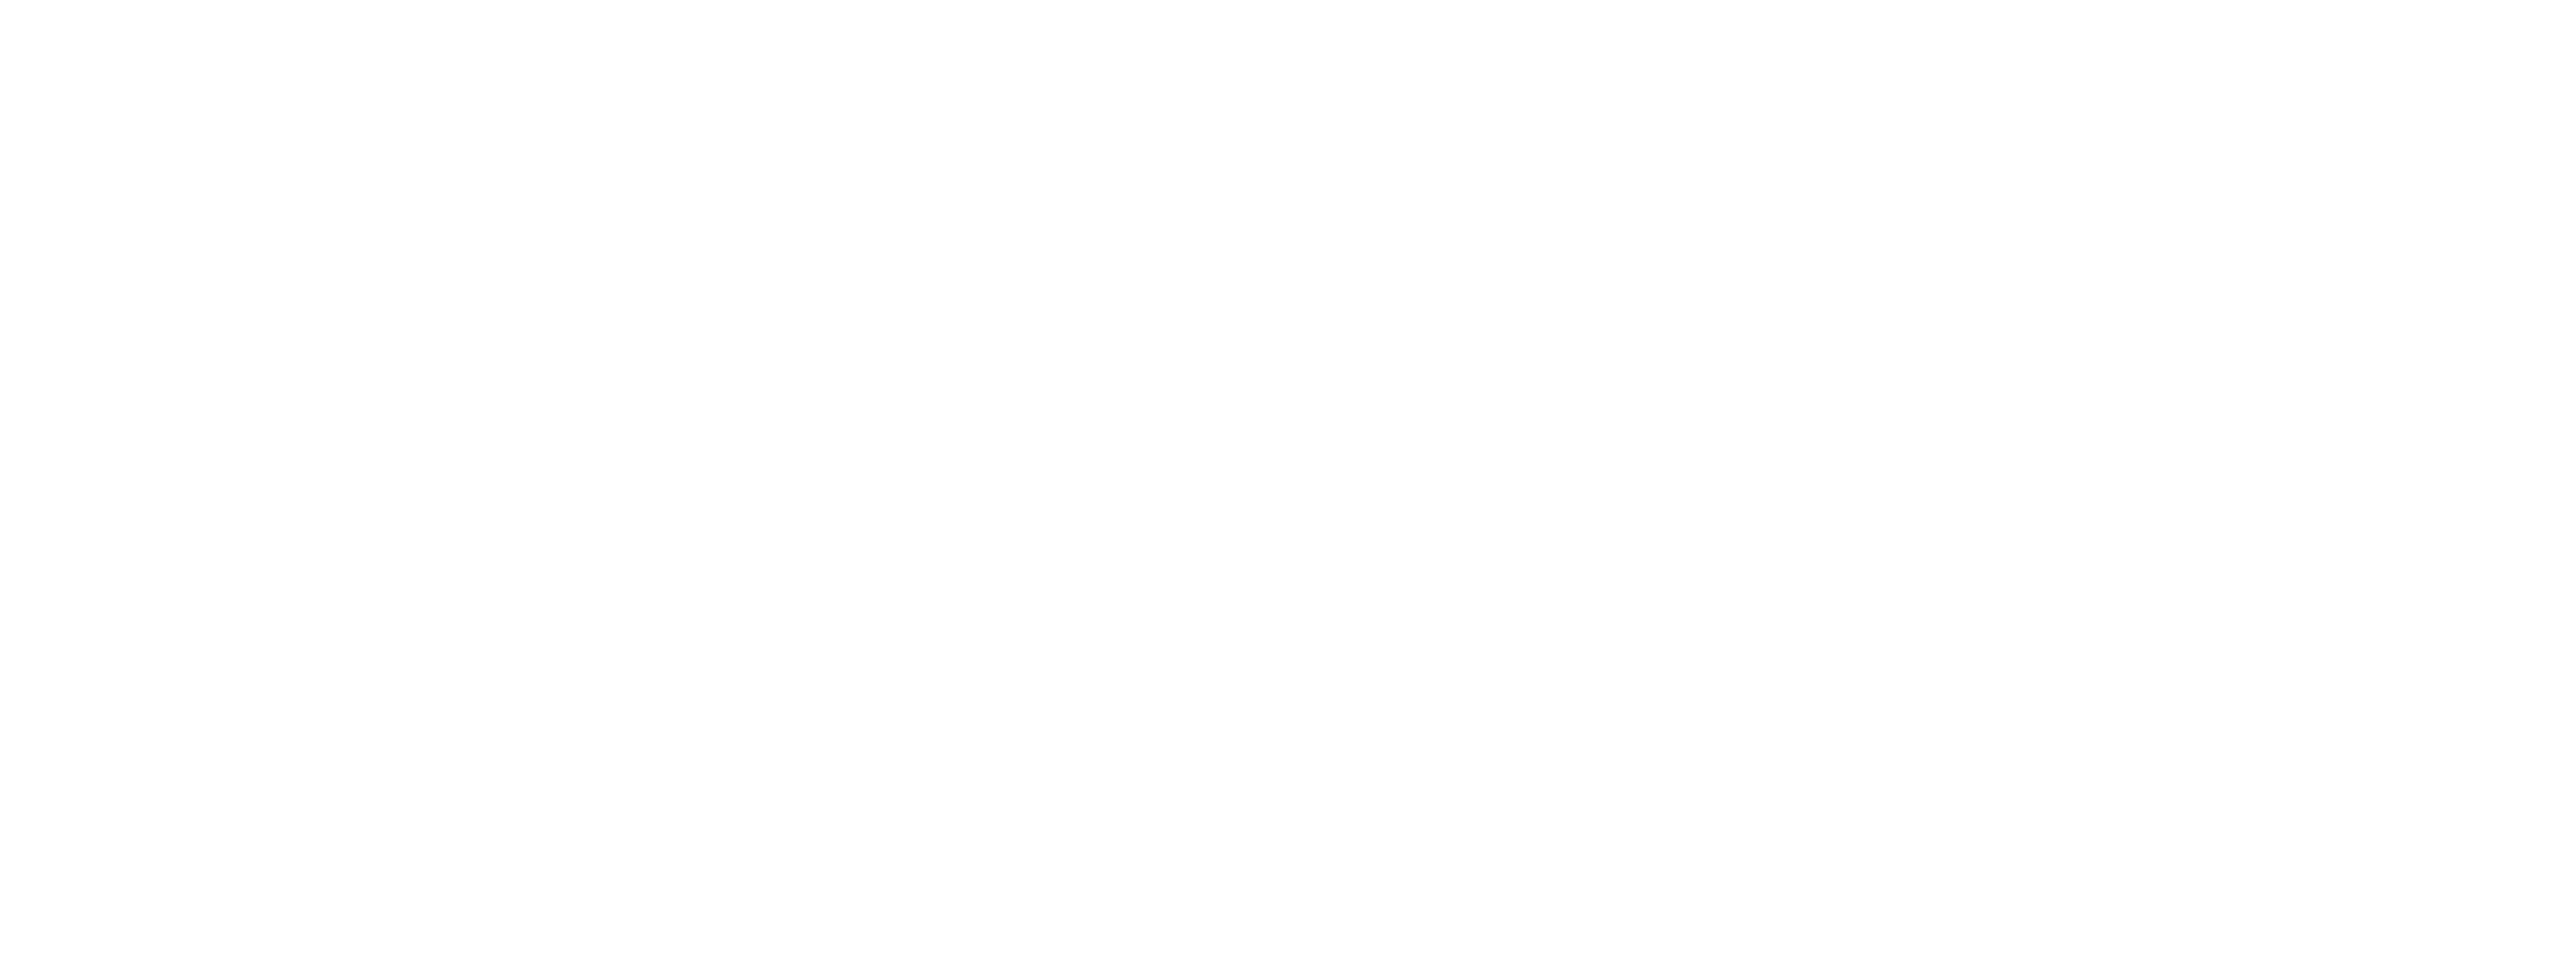 WMF logo redesign Def wit